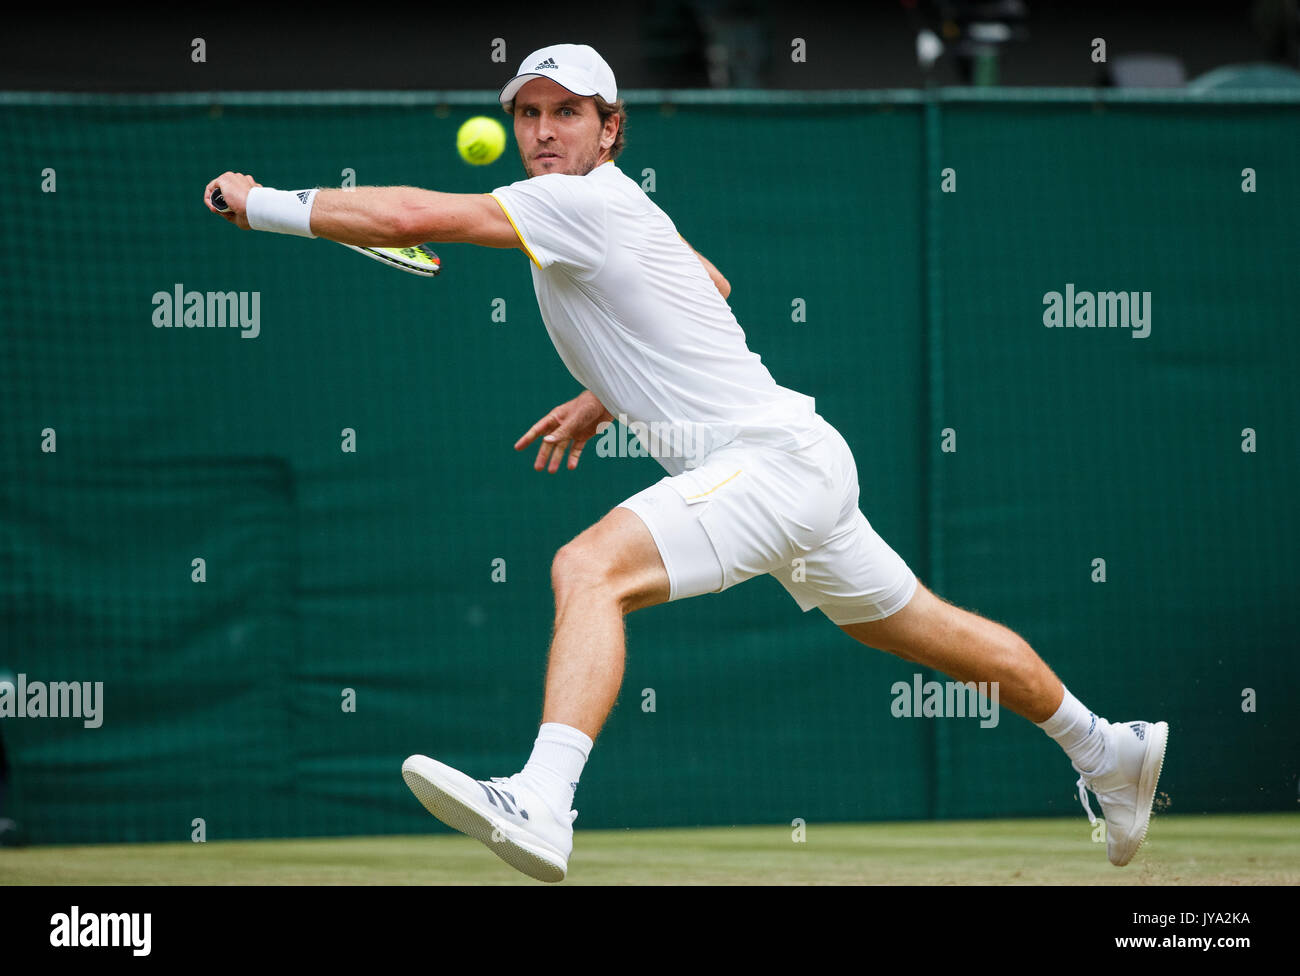 Mischa Zverev in Aktion bei Wimbledon, London, England, Vereinigtes Königreich. Stockfoto